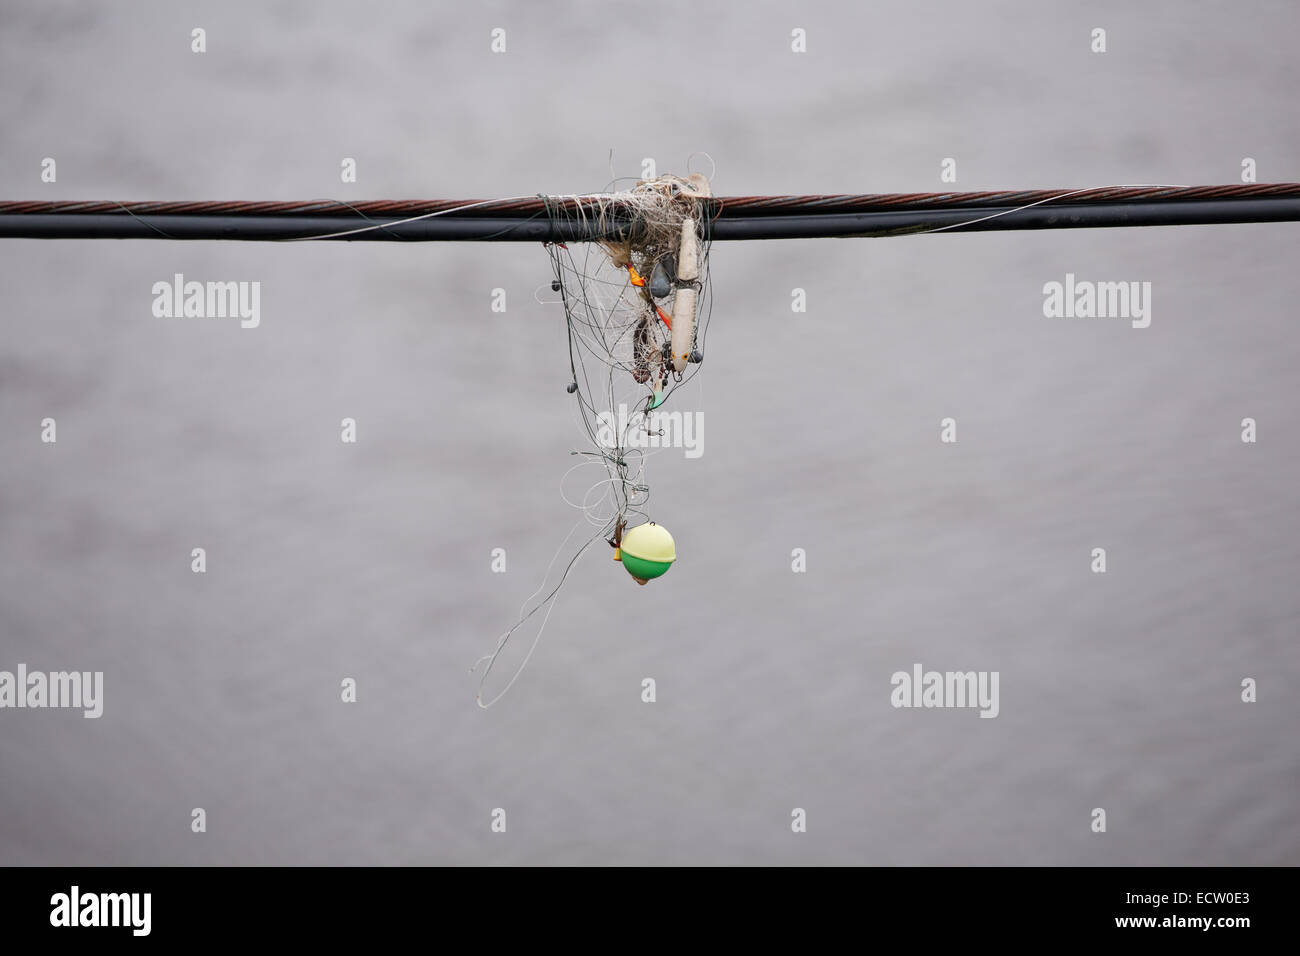 Divers matériel de pêche emmêlé sur le câble avec de l'eau ridée bokeh en arrière-plan. Banque D'Images